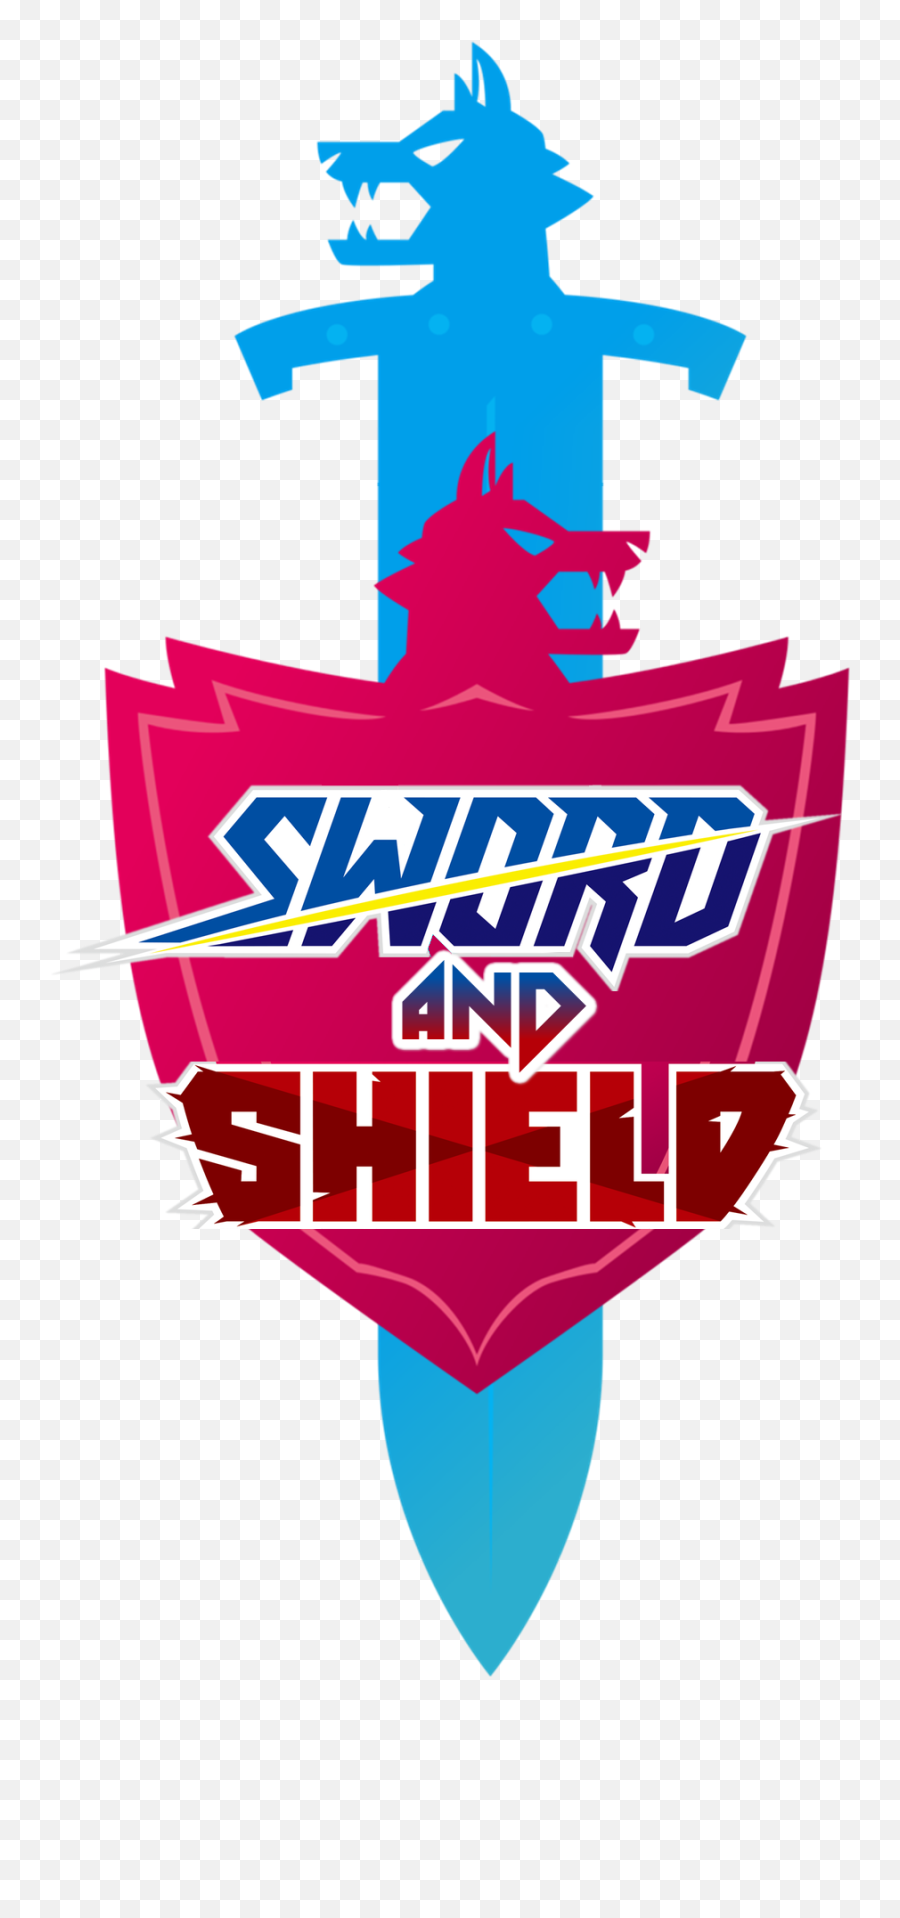 Pokemon Sword And Shield In One Logo - Pokemon Sword And Shield Png Emoji,Pokemon Sword And Shield Logo